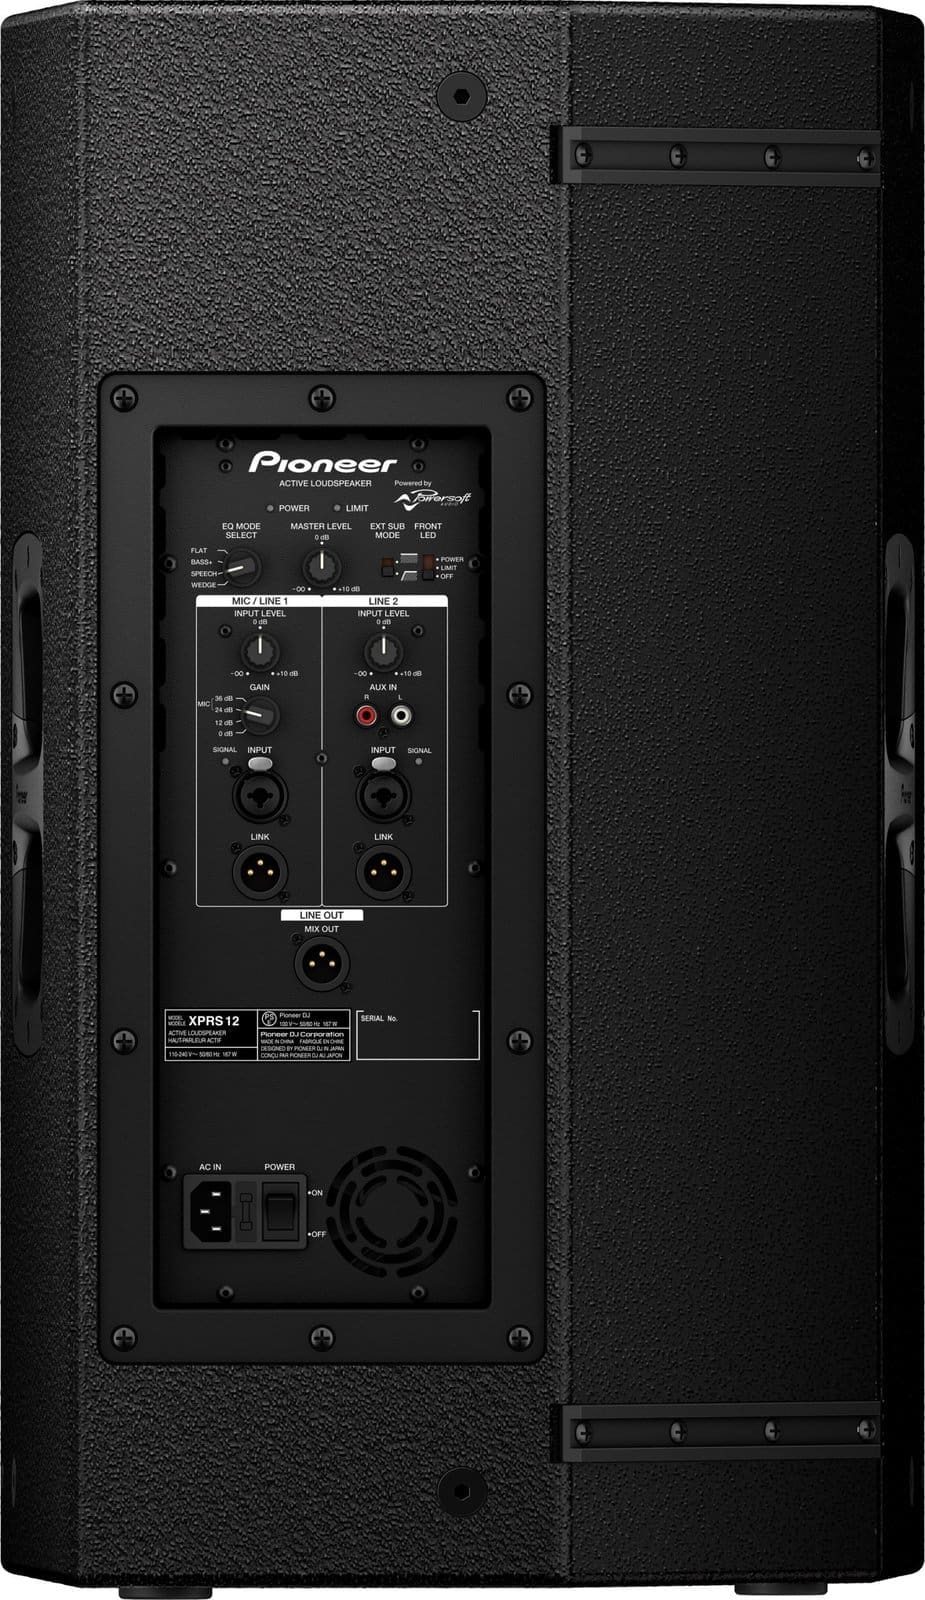 Pioneer DJ XPRS2. Altavoces activos para DJ, música en vivo o speech. 